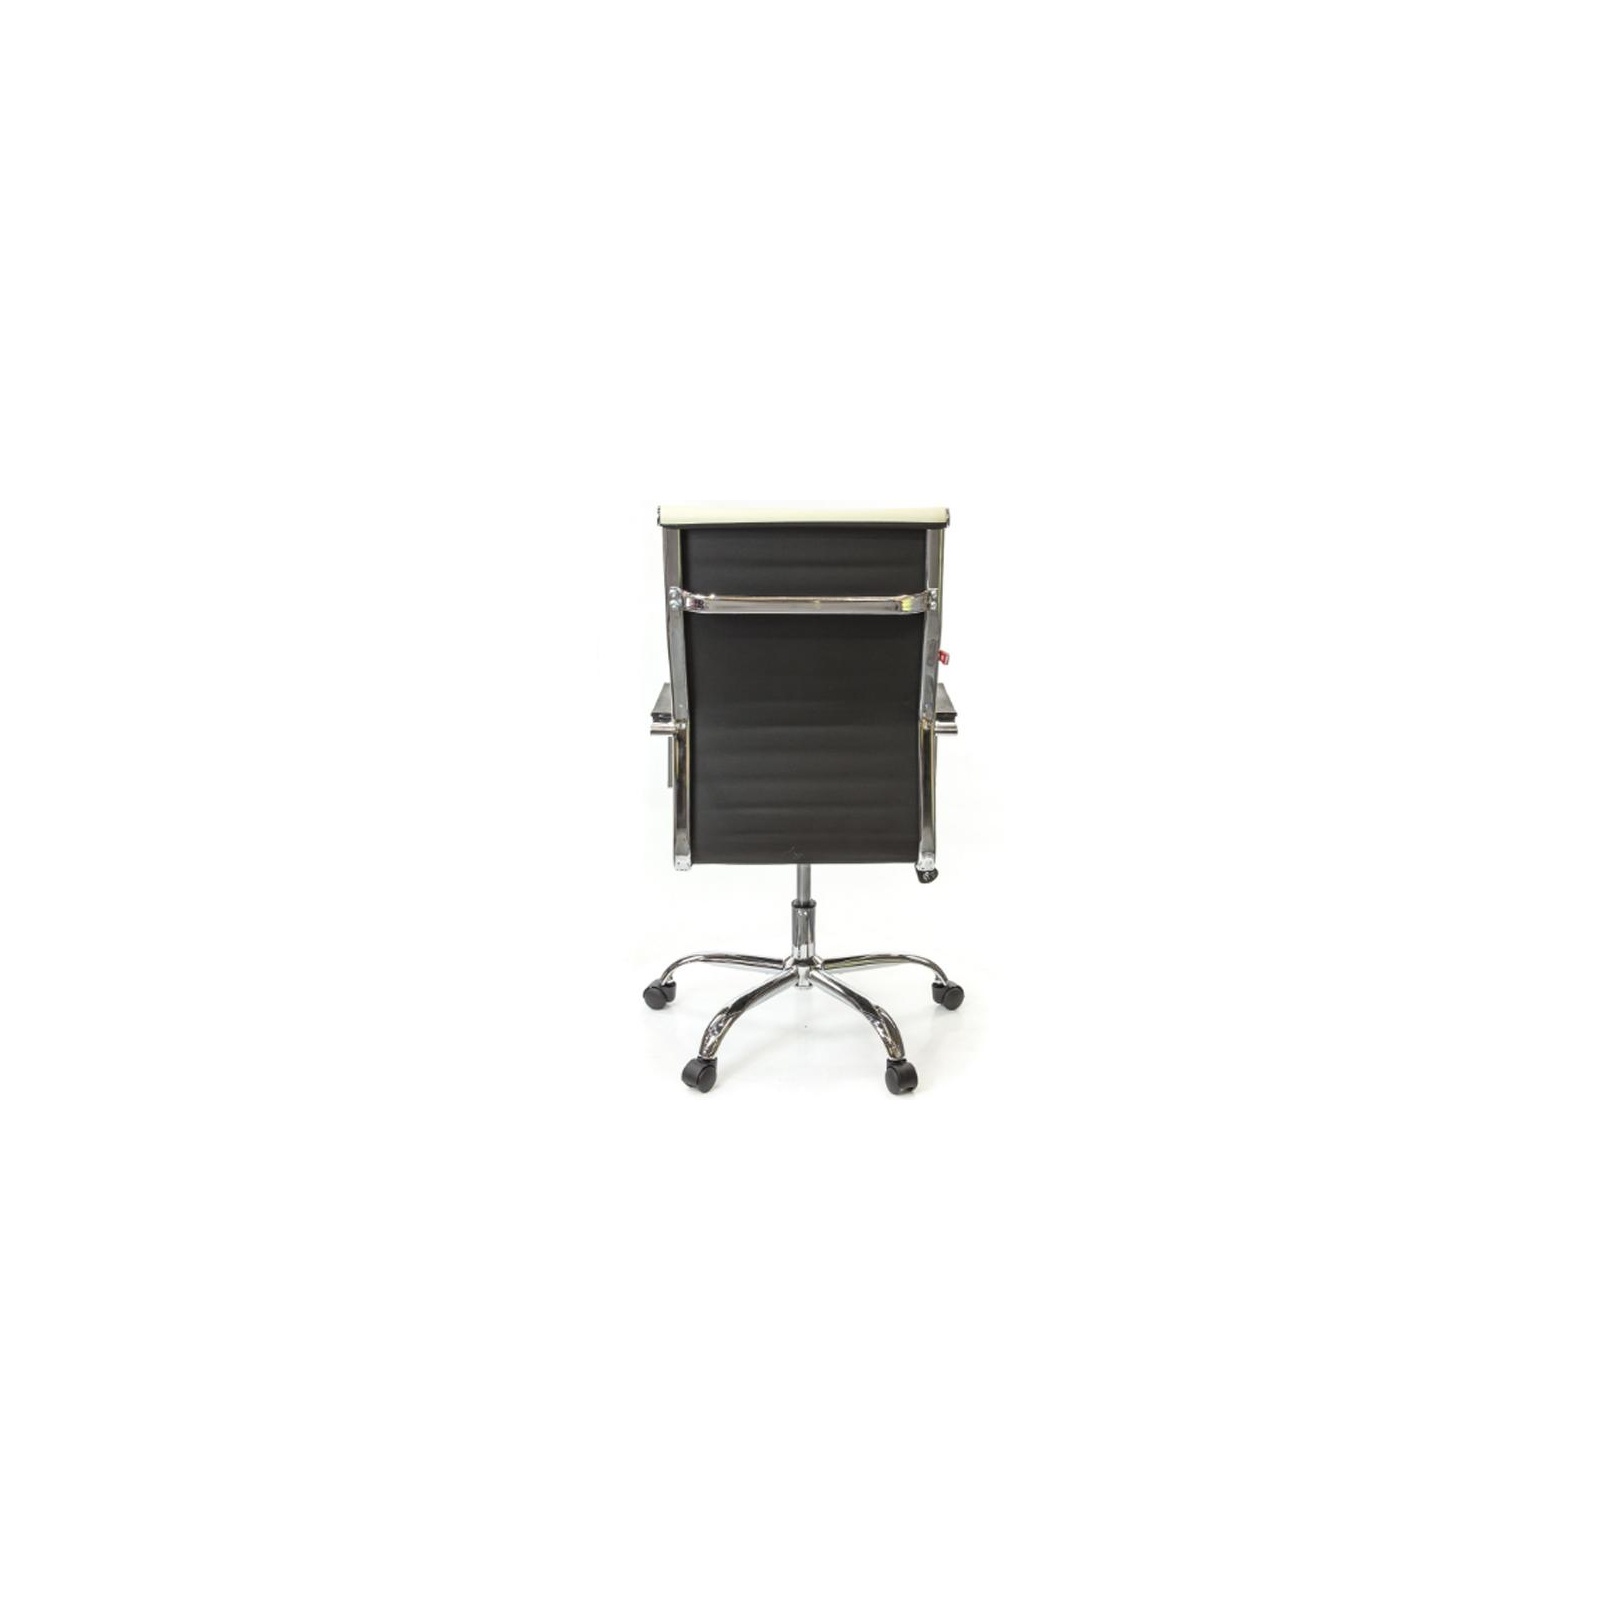 Офисное кресло Аклас Кап FX СН TILT Оранжевое (09905) изображение 4